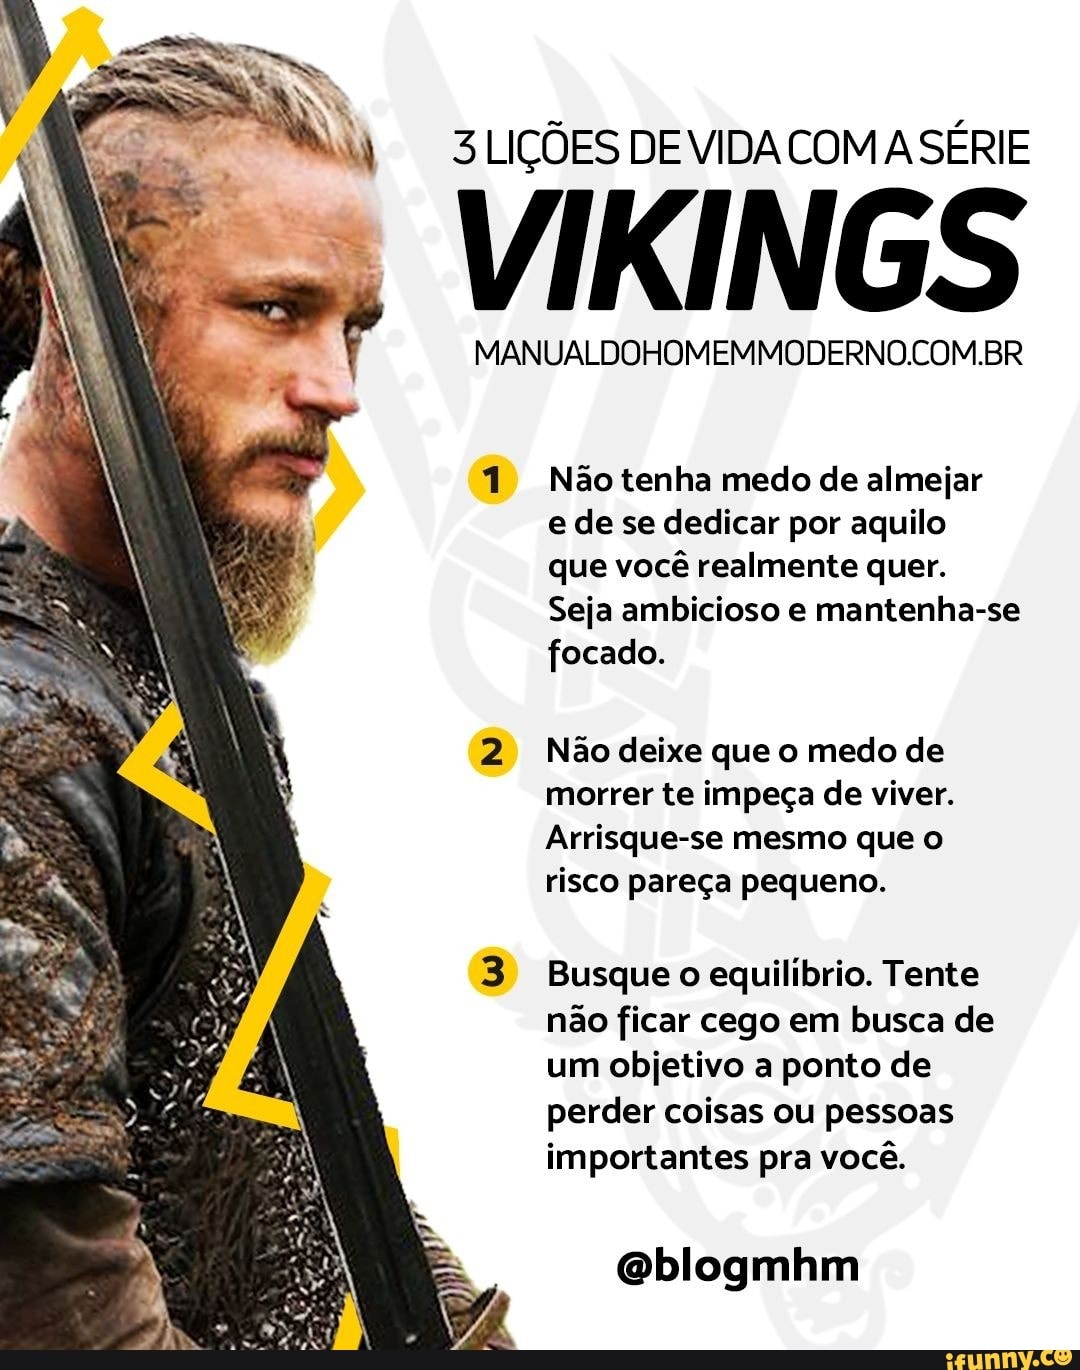 Vikings da Depressão - Definição de ranço na última temporada - - - - - - -  Mas sabe ser bonita <3